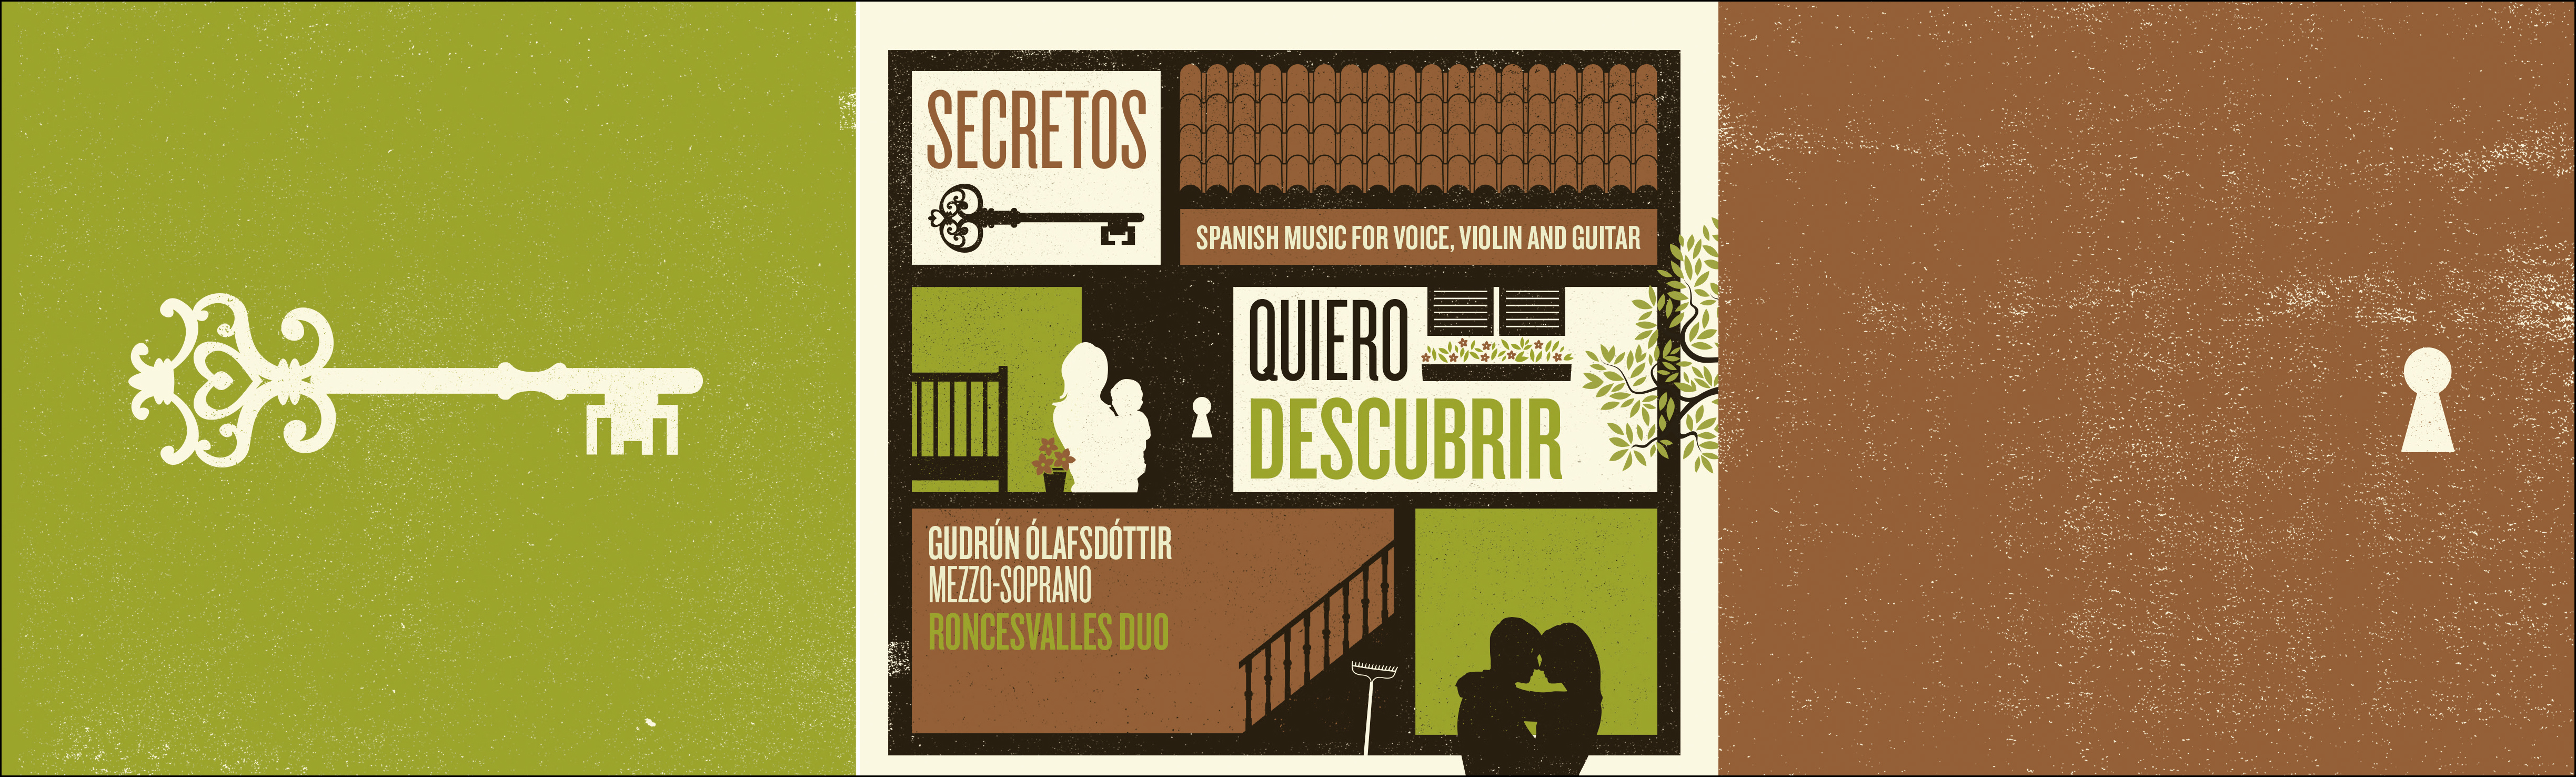 Aglaia Trio-Secretos Quiero Descubrir-CD